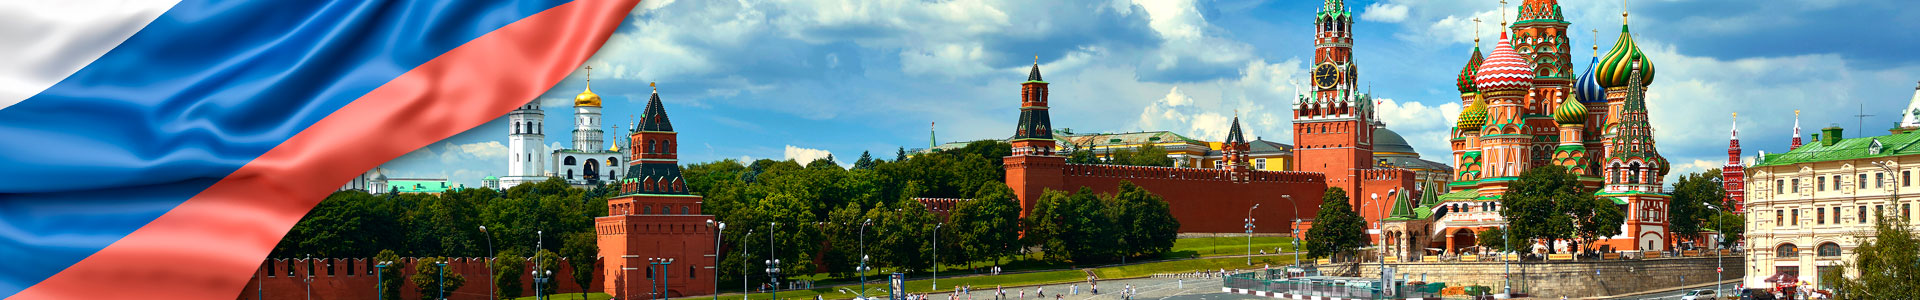 Bandera de Rusia con vista panorámica de la Plaza Roja de Moscú